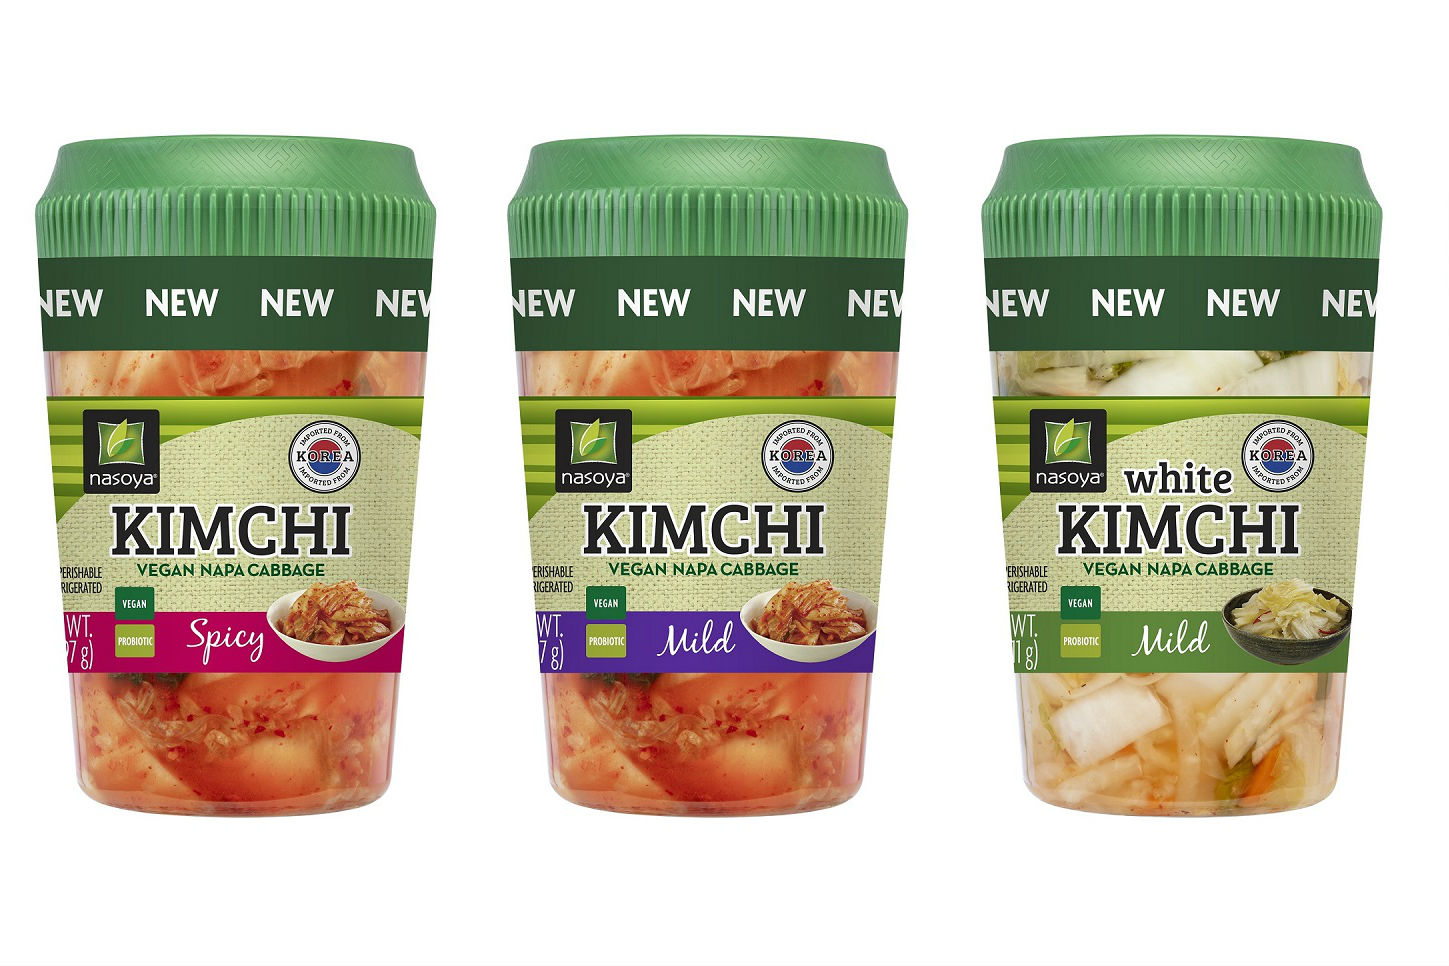 풀무원식품, ‘한국산 김치’로 미국진출 1년 만에 시장점유율 1위 올라